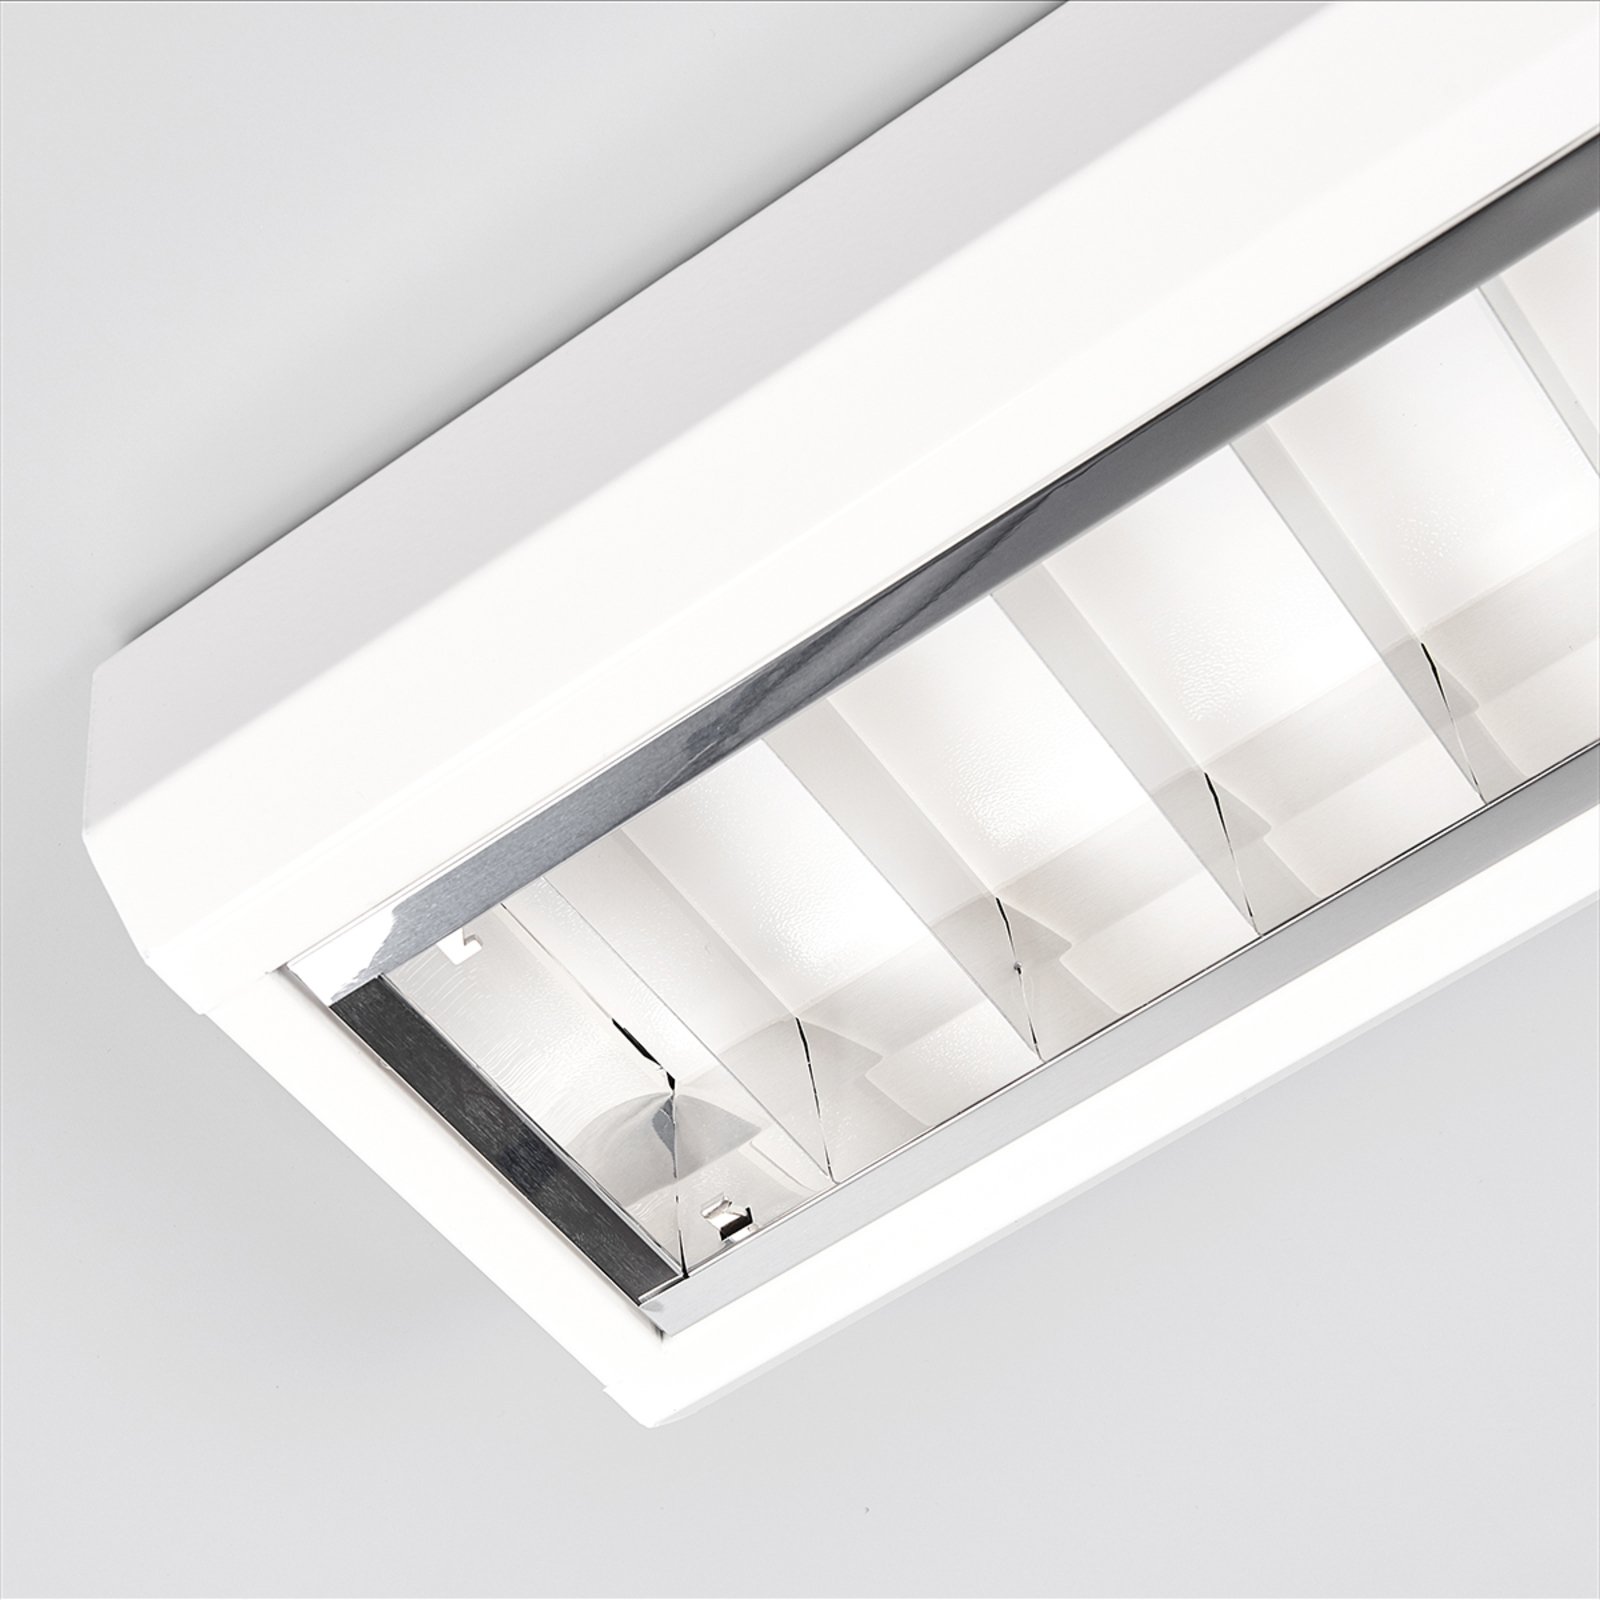 LED raster-opbouwverl voor kantoren, 33 W, 4.000 K